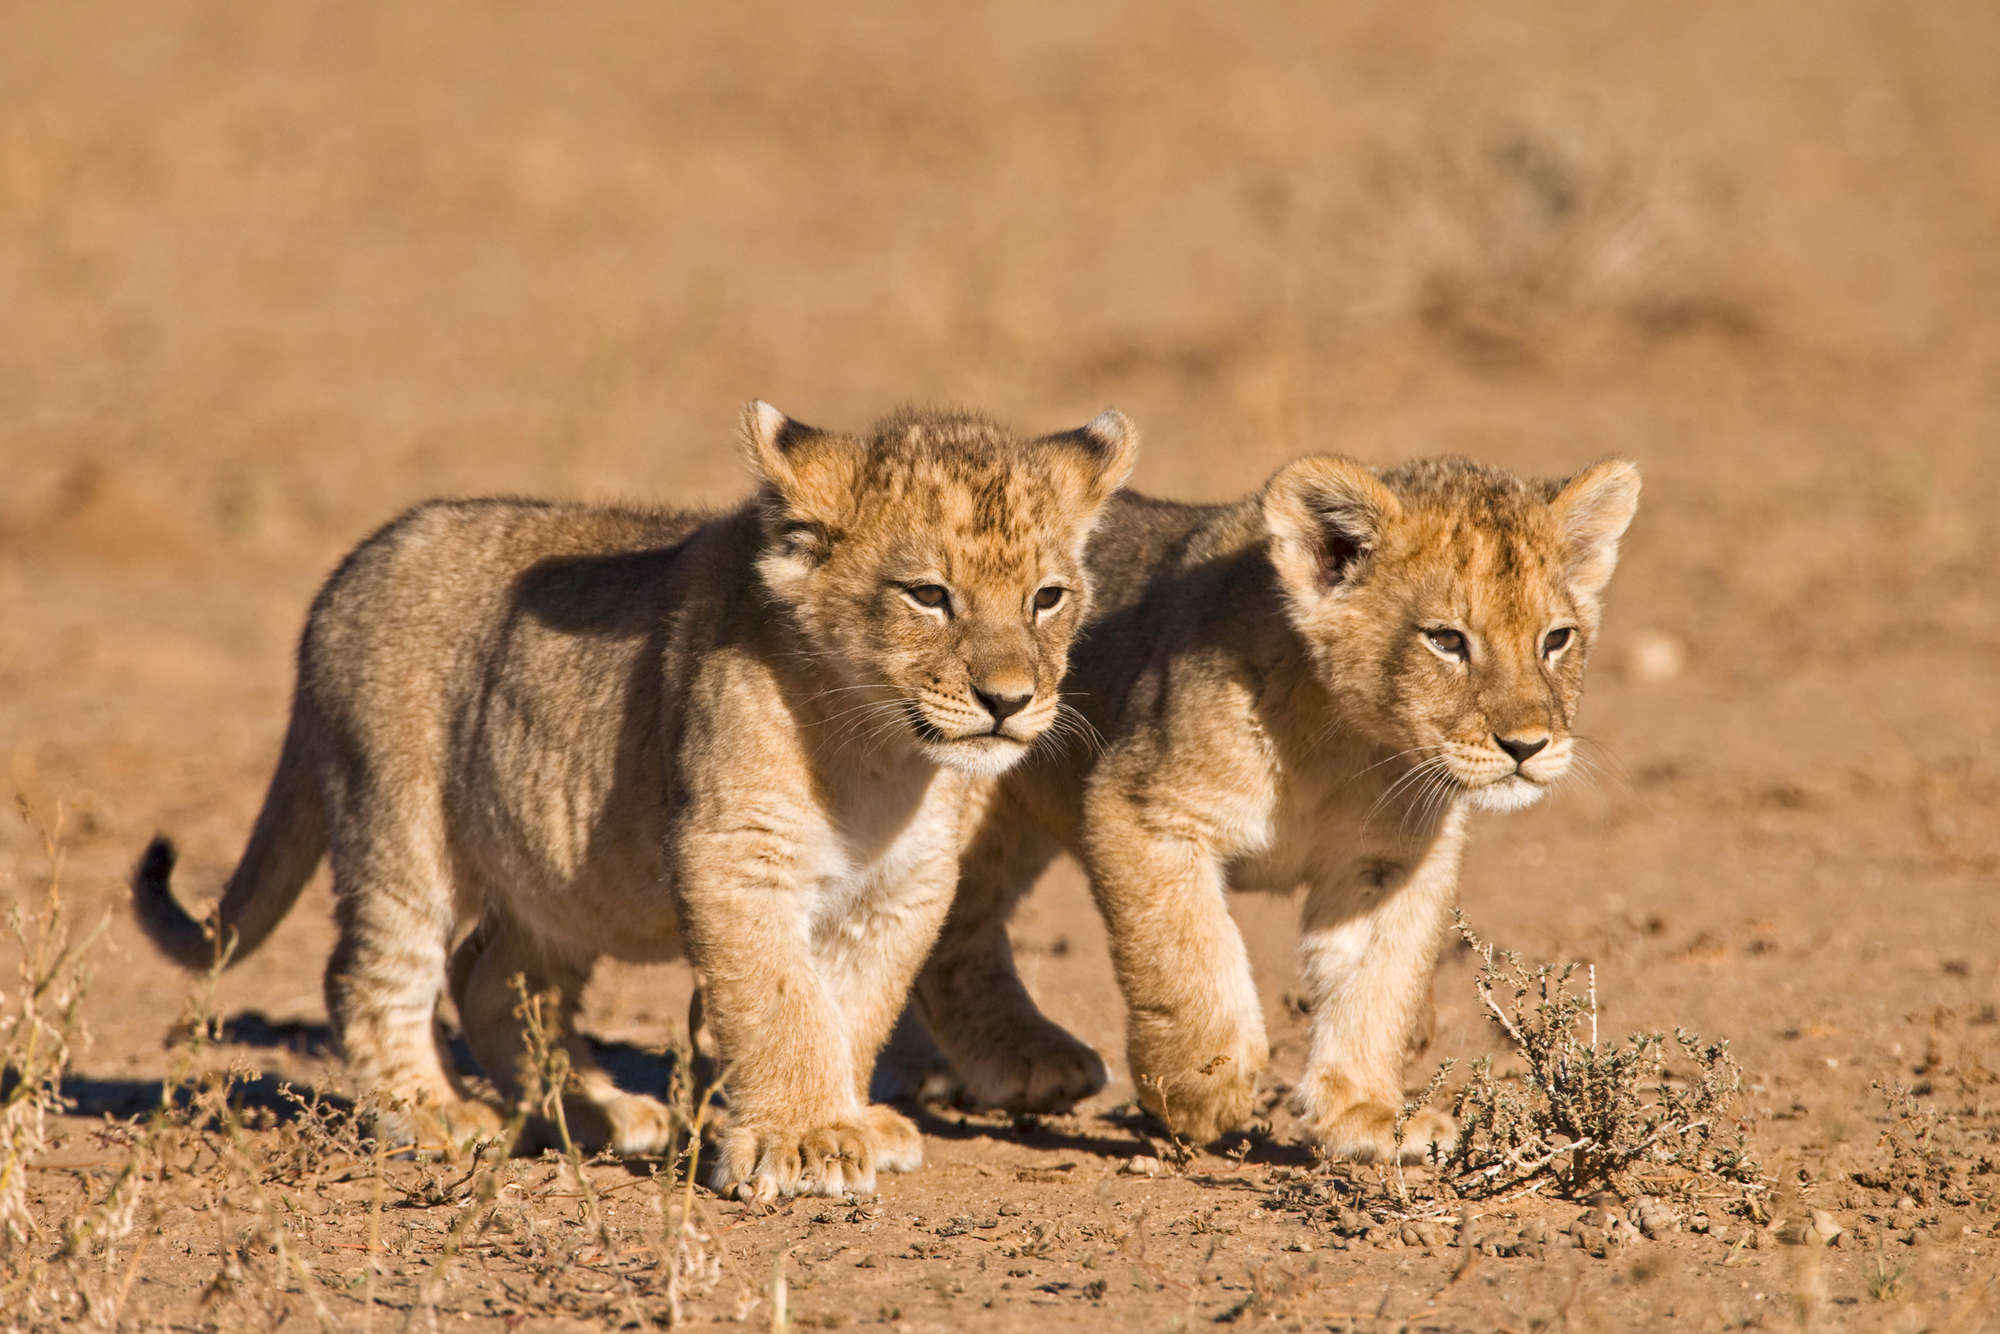             Fotomurali di leone con due cuccioli in libertà su vinile testurizzato
        